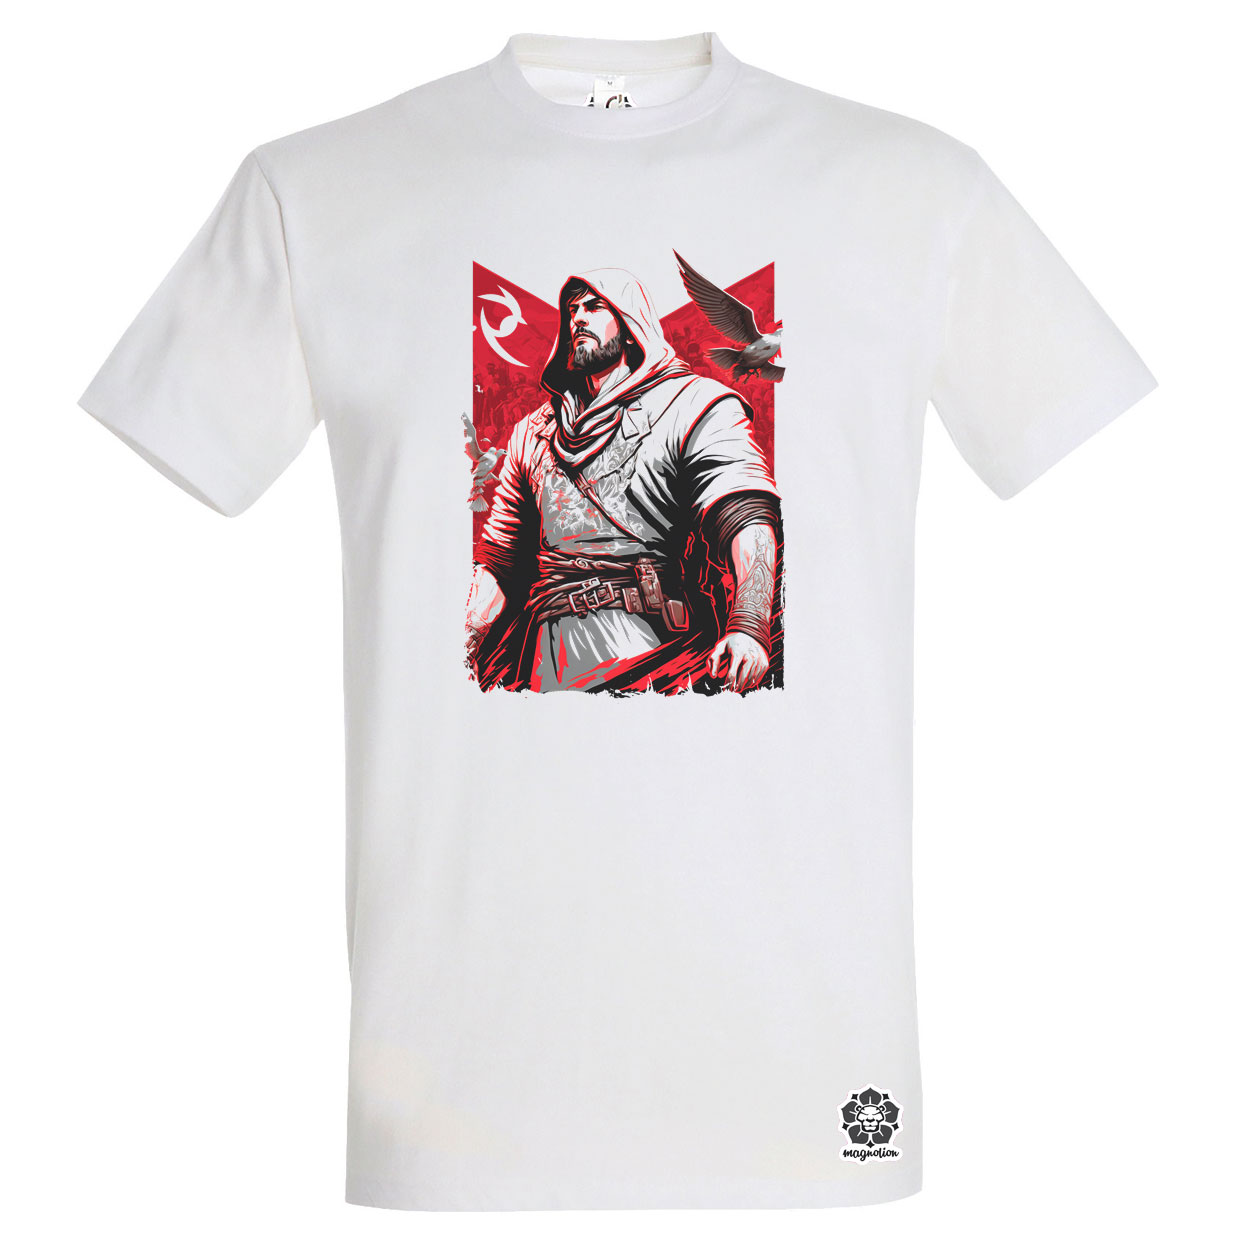 Ezio portré fanart v3